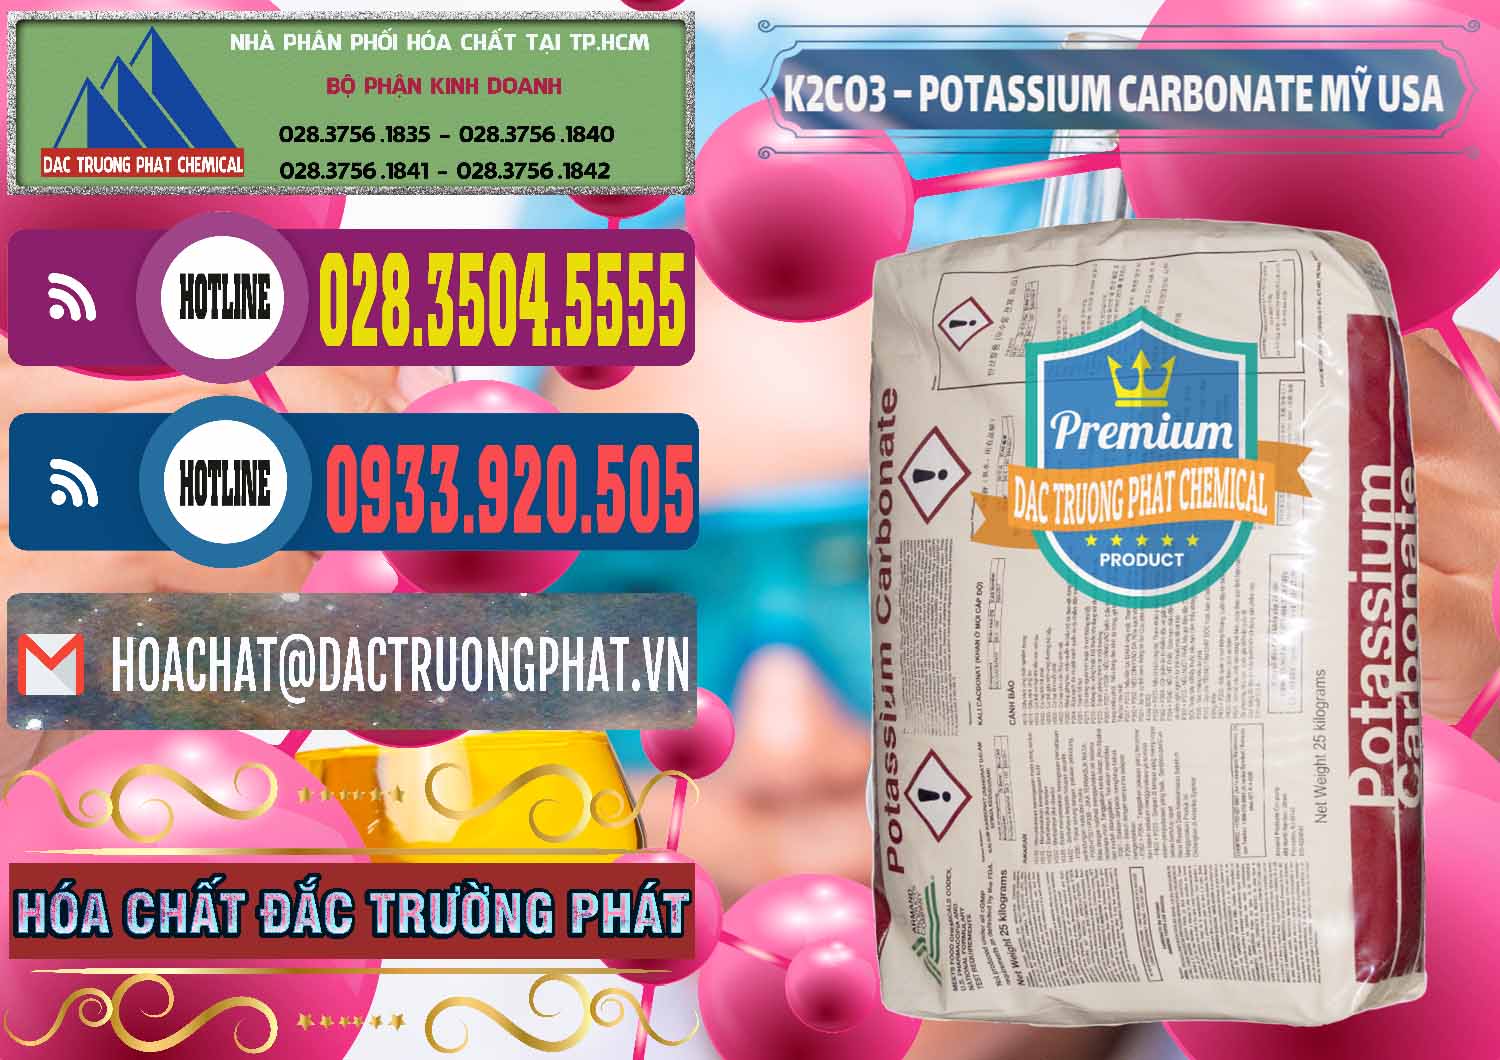 Đơn vị chuyên cung cấp & bán K2Co3 – Potassium Carbonate Mỹ USA - 0082 - Chuyên phân phối và kinh doanh hóa chất tại TP.HCM - muabanhoachat.com.vn